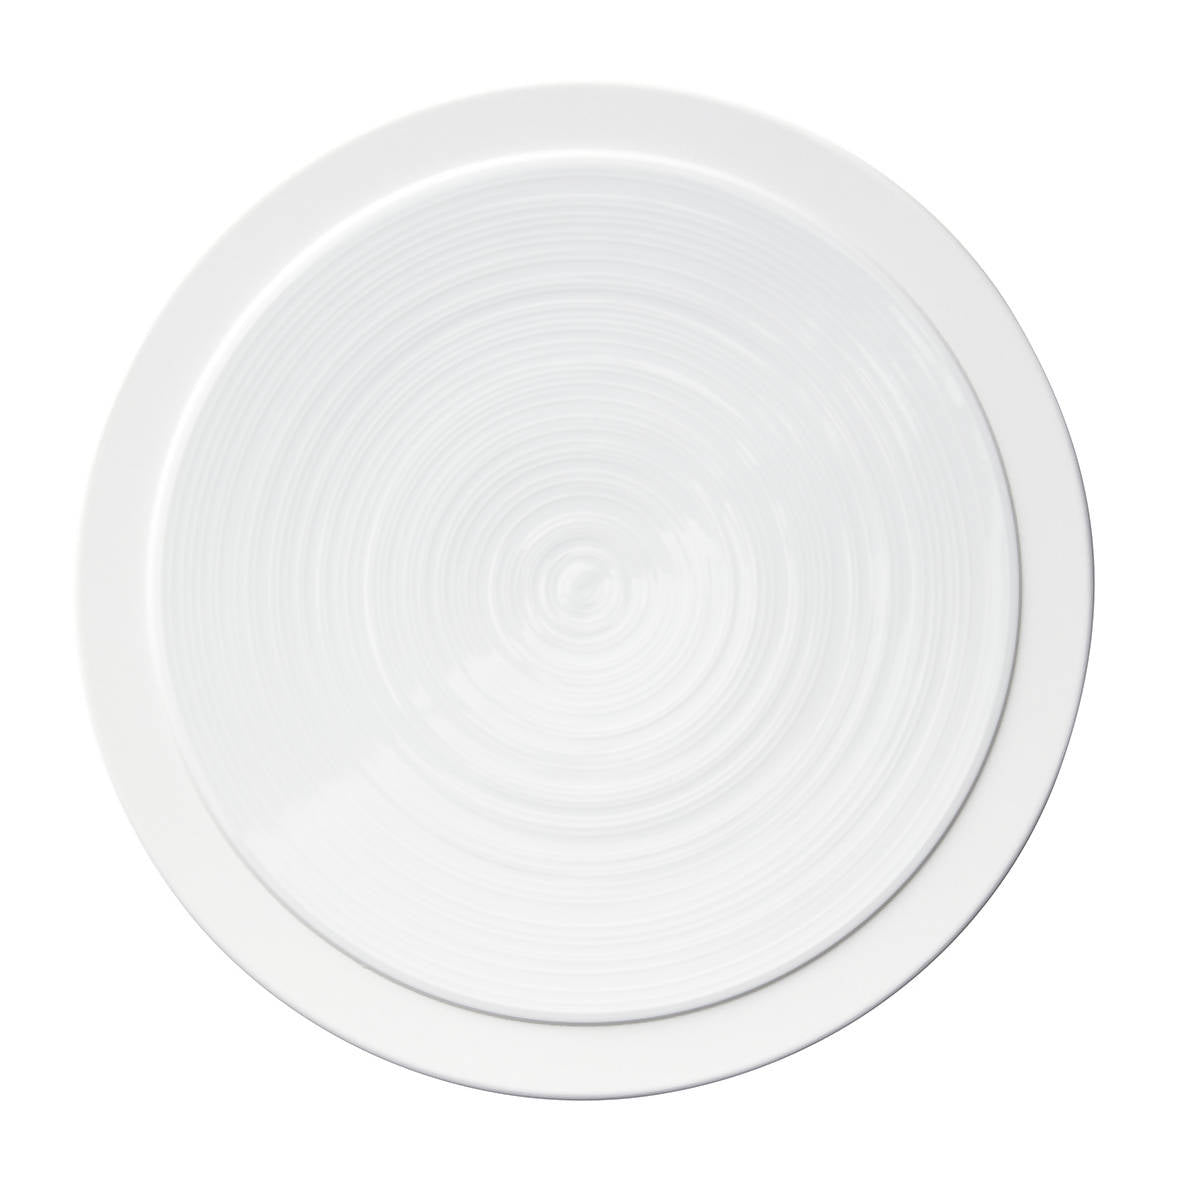 BAHIA - Dinner Plate 10" (set of 4)